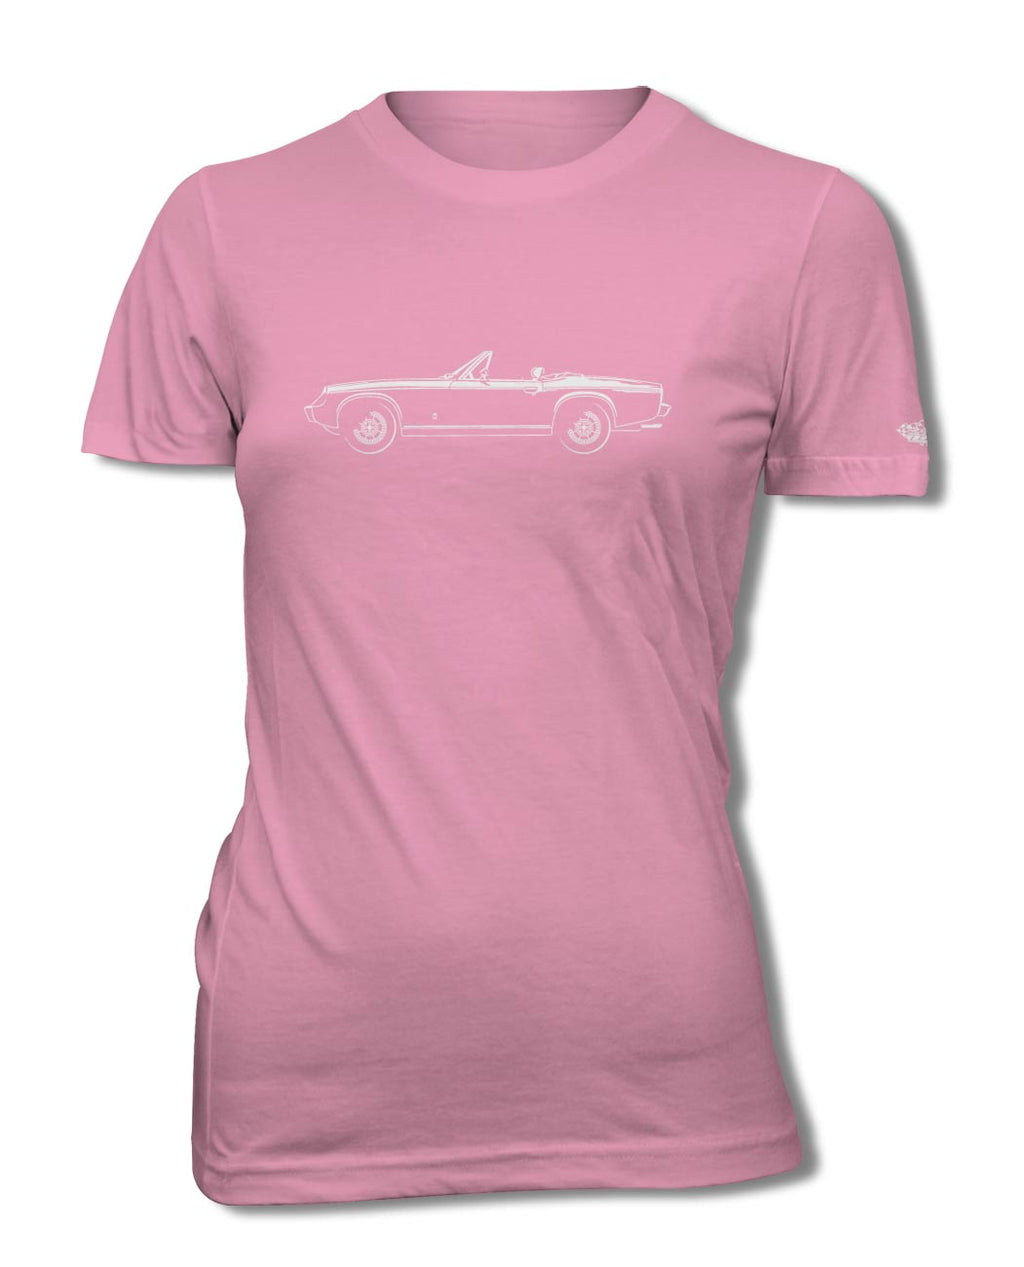 Jensen-Healey Convertible T-Shirt - Women - Side View